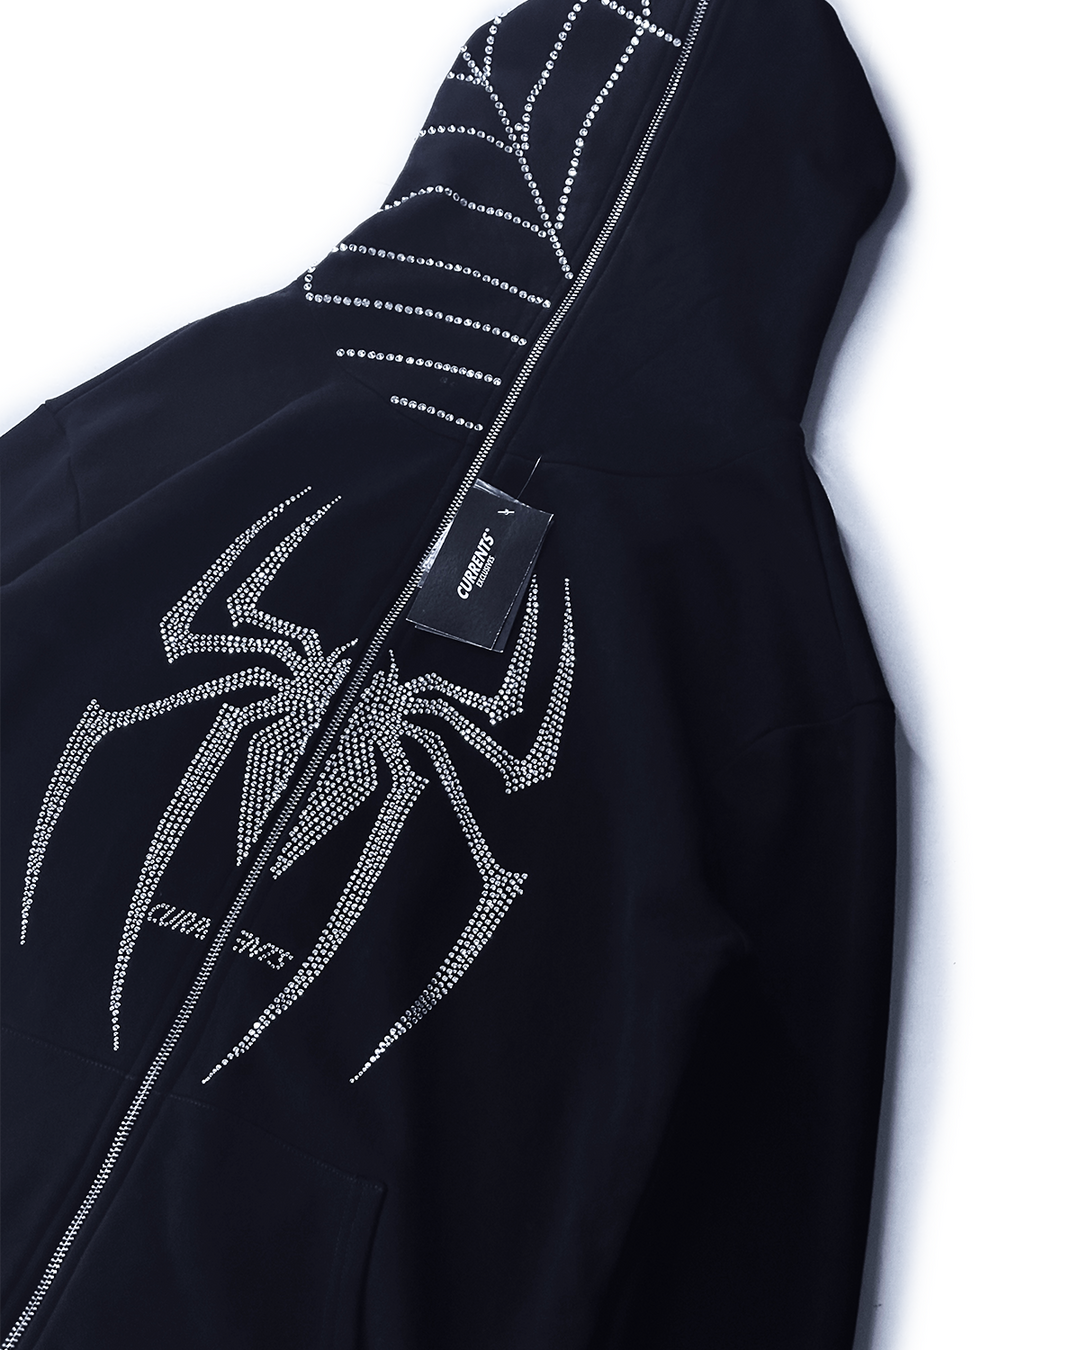 Rhinestone Spider Full Zip 💎 (LAST ONE)